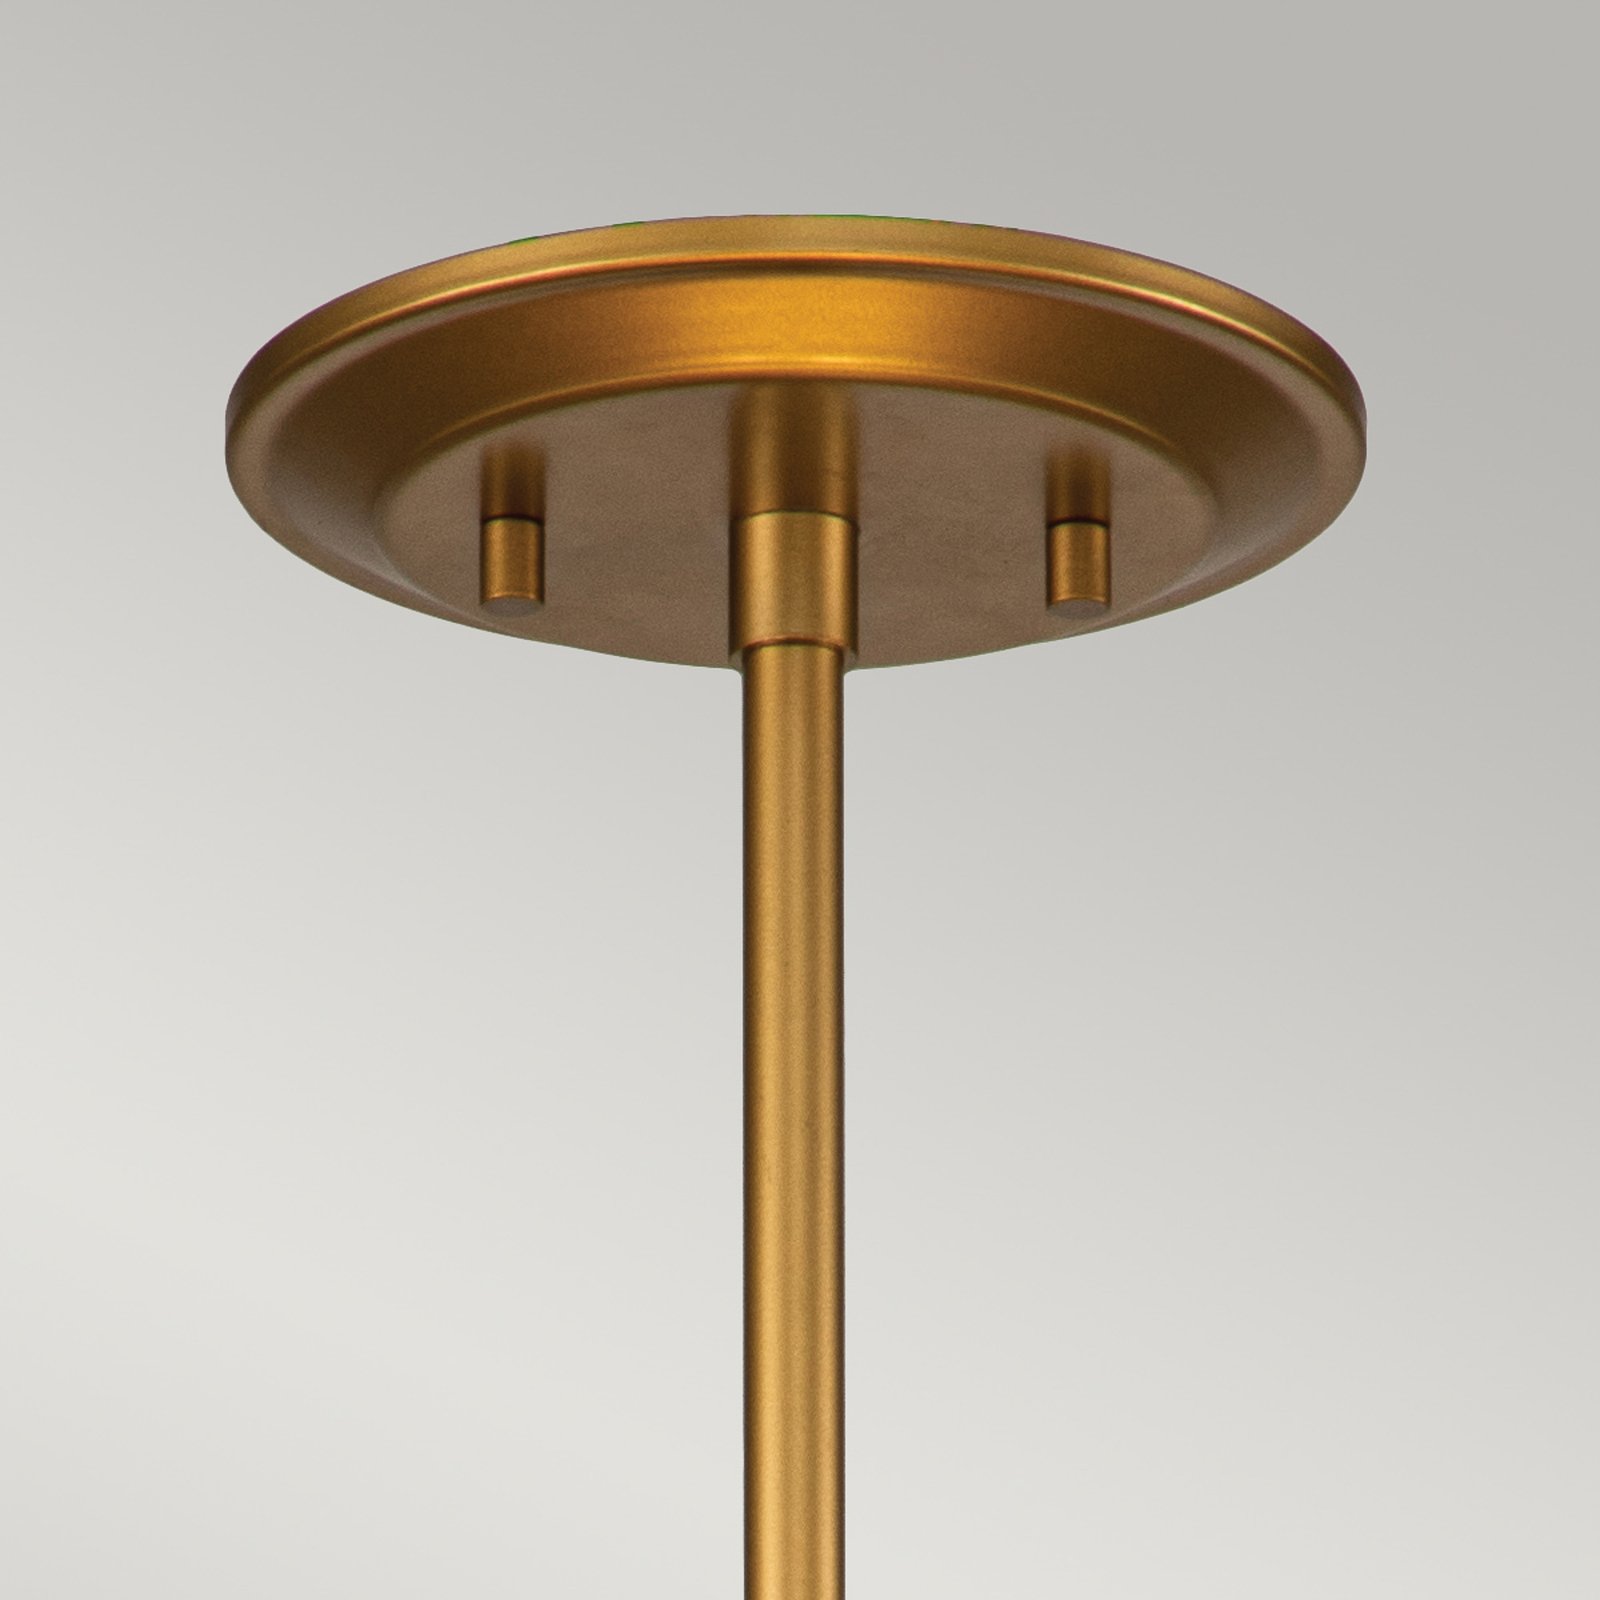 Ziggy pendant light, Ø 40 cm, gold